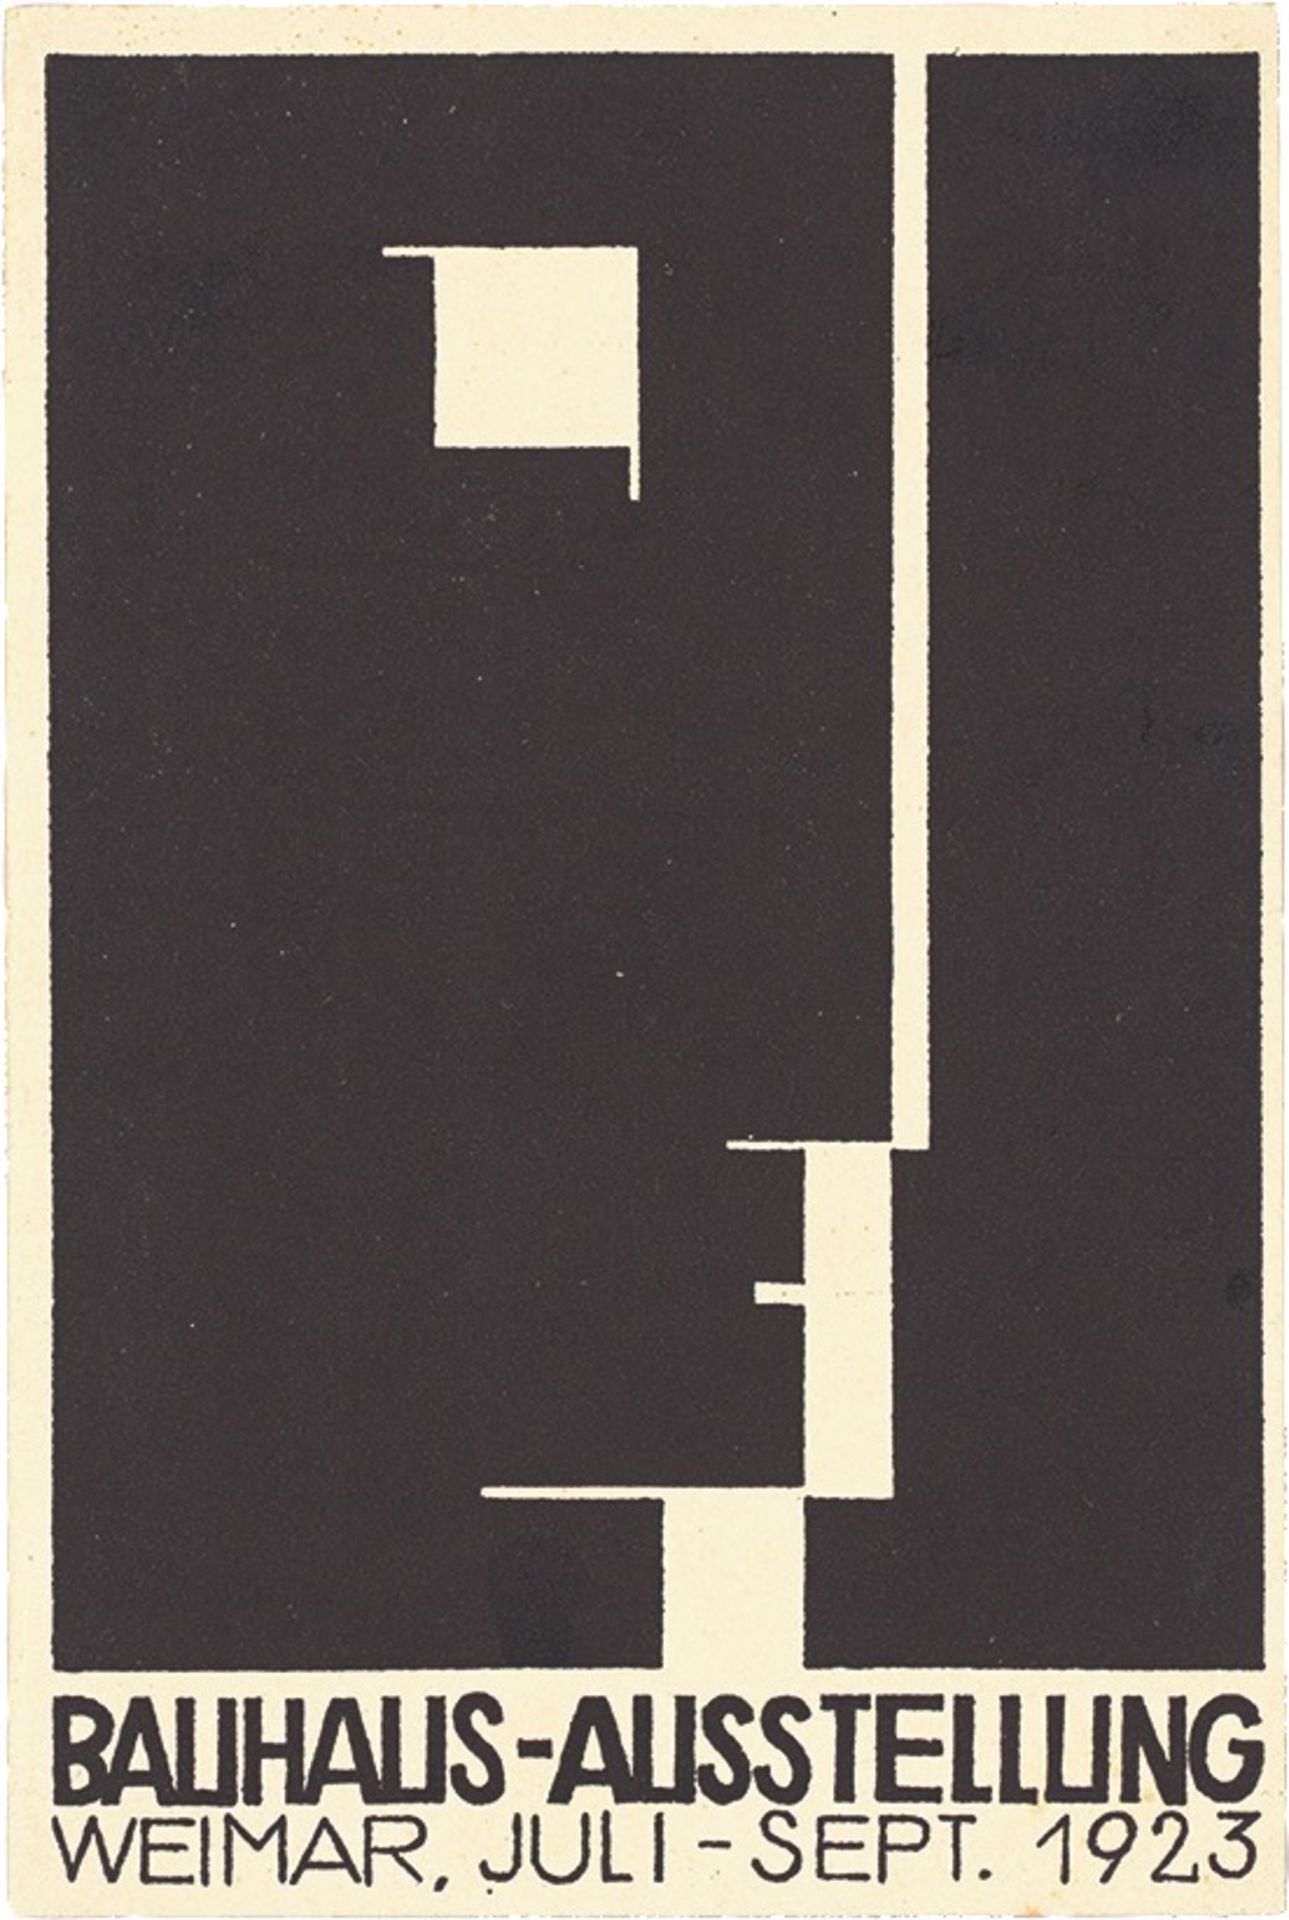 Bauhaus. ”Ausstellung Weimar 1923” – 20 postcards by various Bauhaus artists. 1923 - Image 12 of 20